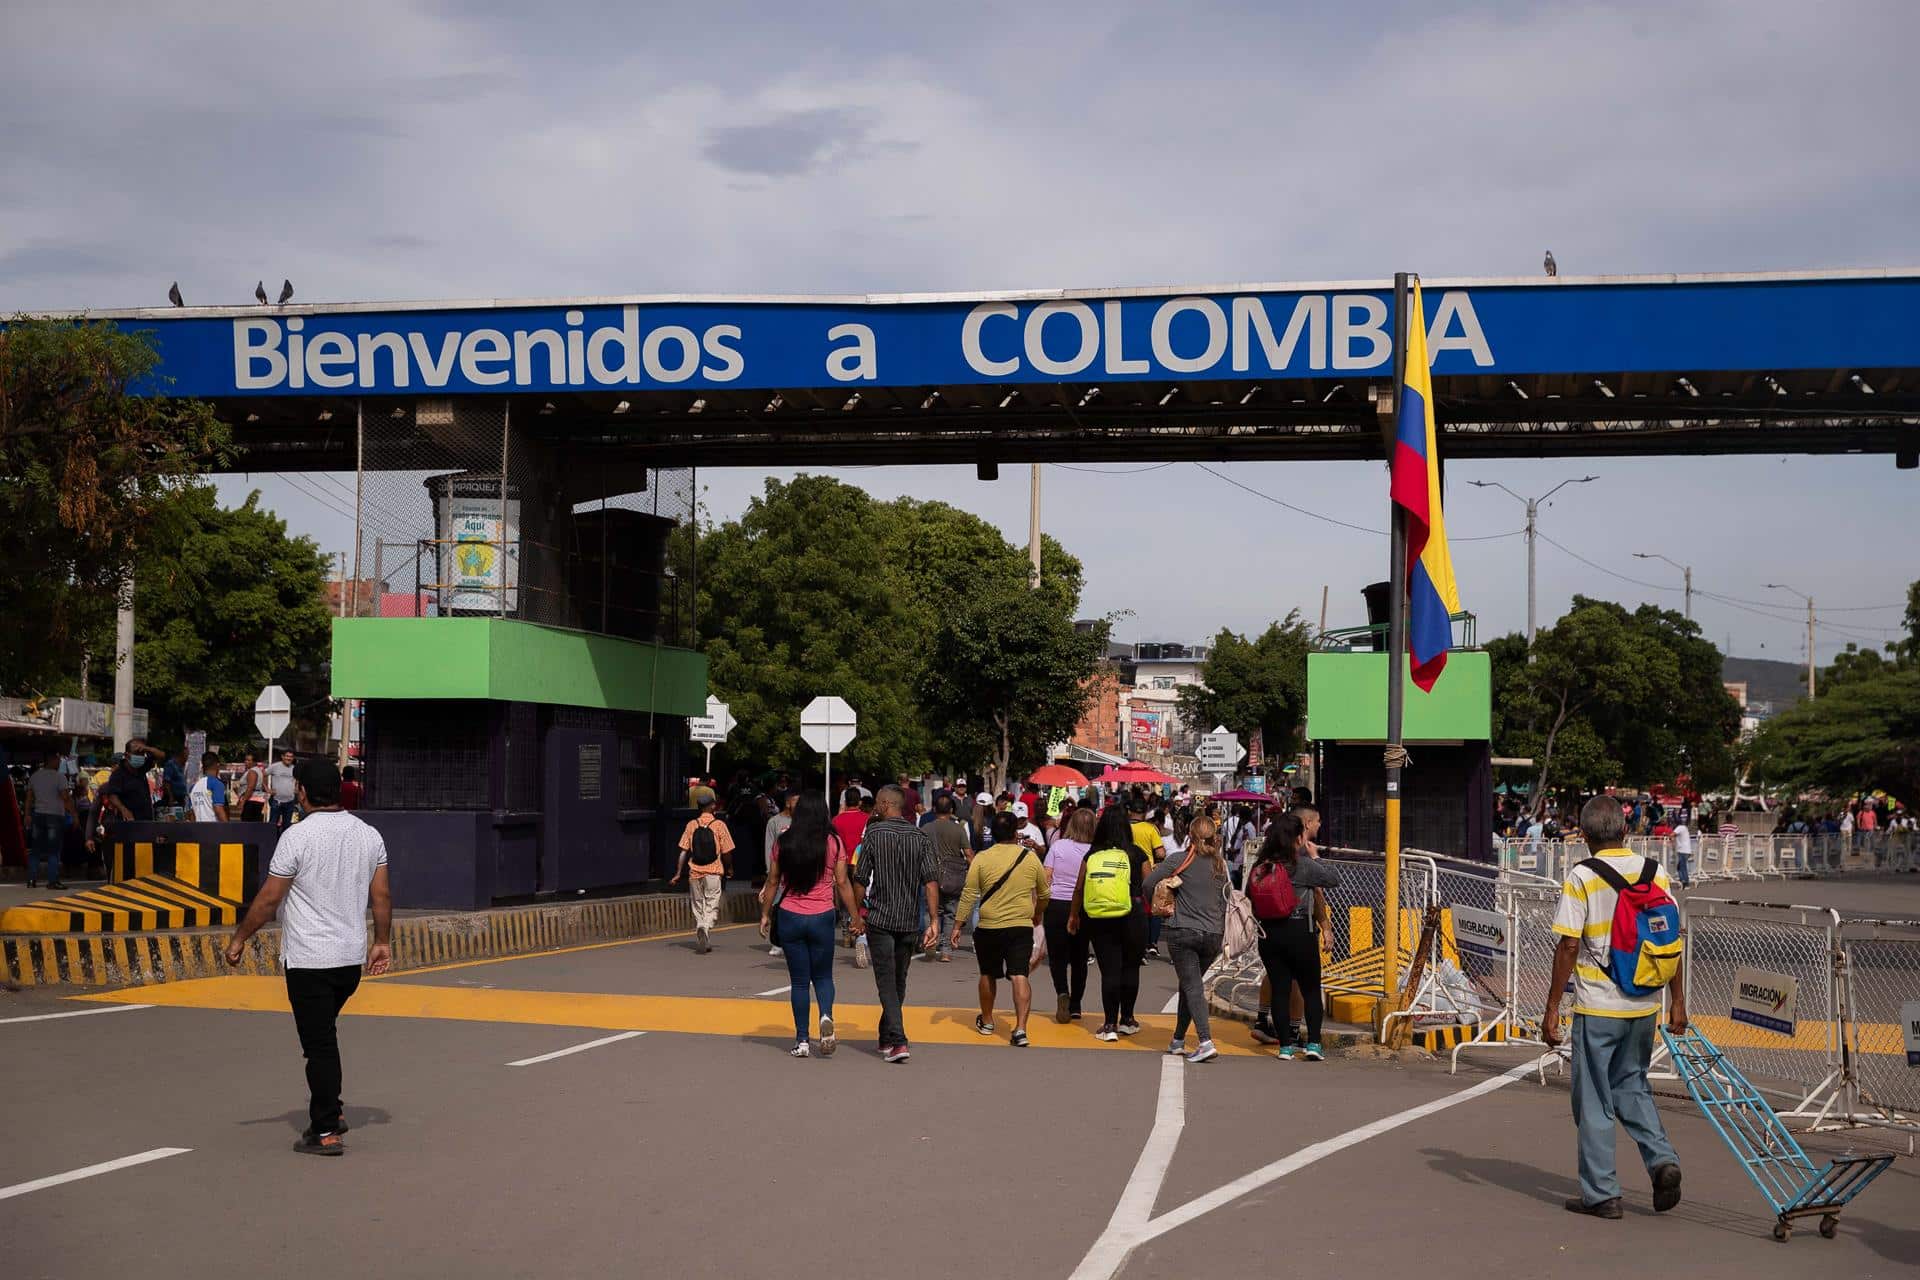 Colombia exigiría a los venezolanos pasaporte vigente para entrar, transitar y permanecer